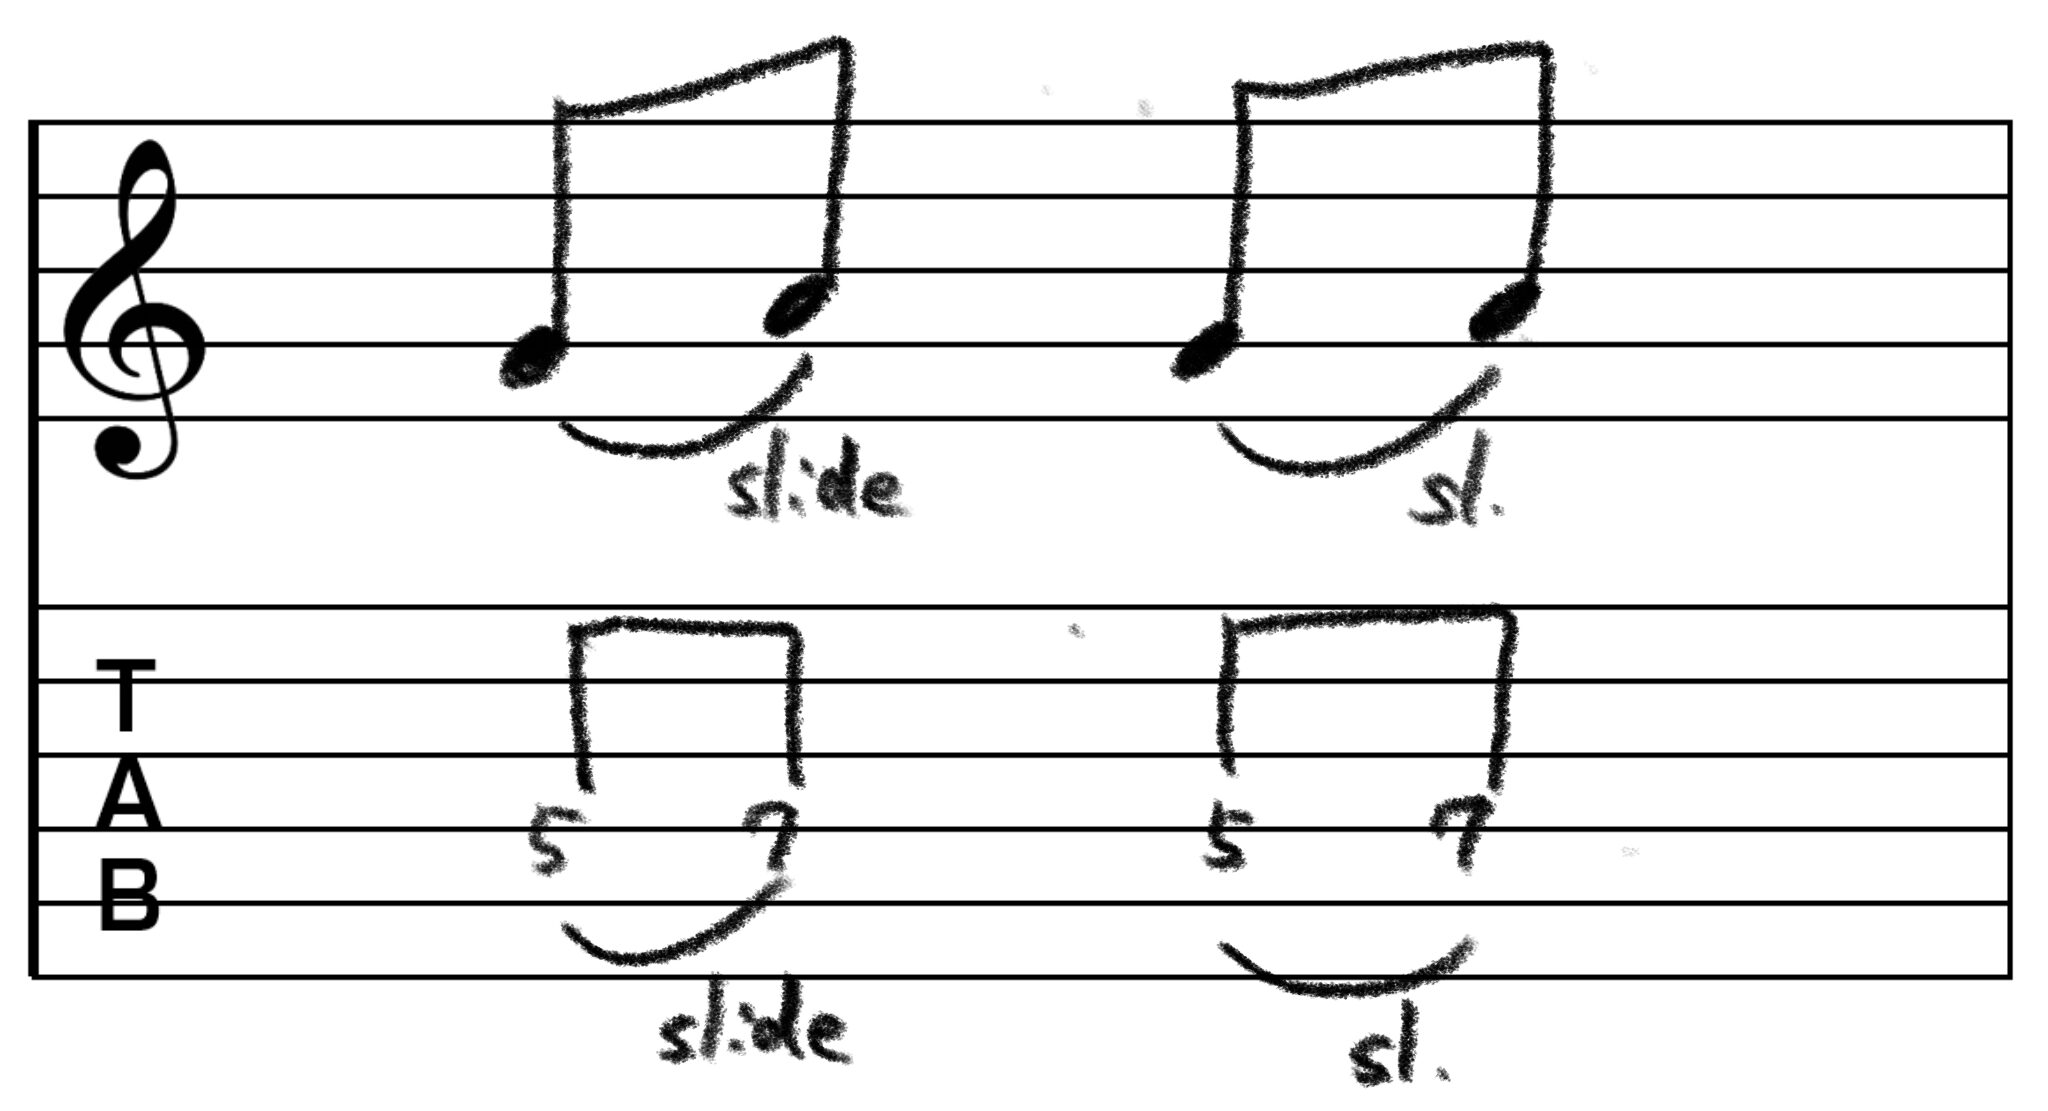 スライドのTAB譜です。 4弦5フレットから4弦7フレットへのスライドを指示しています。